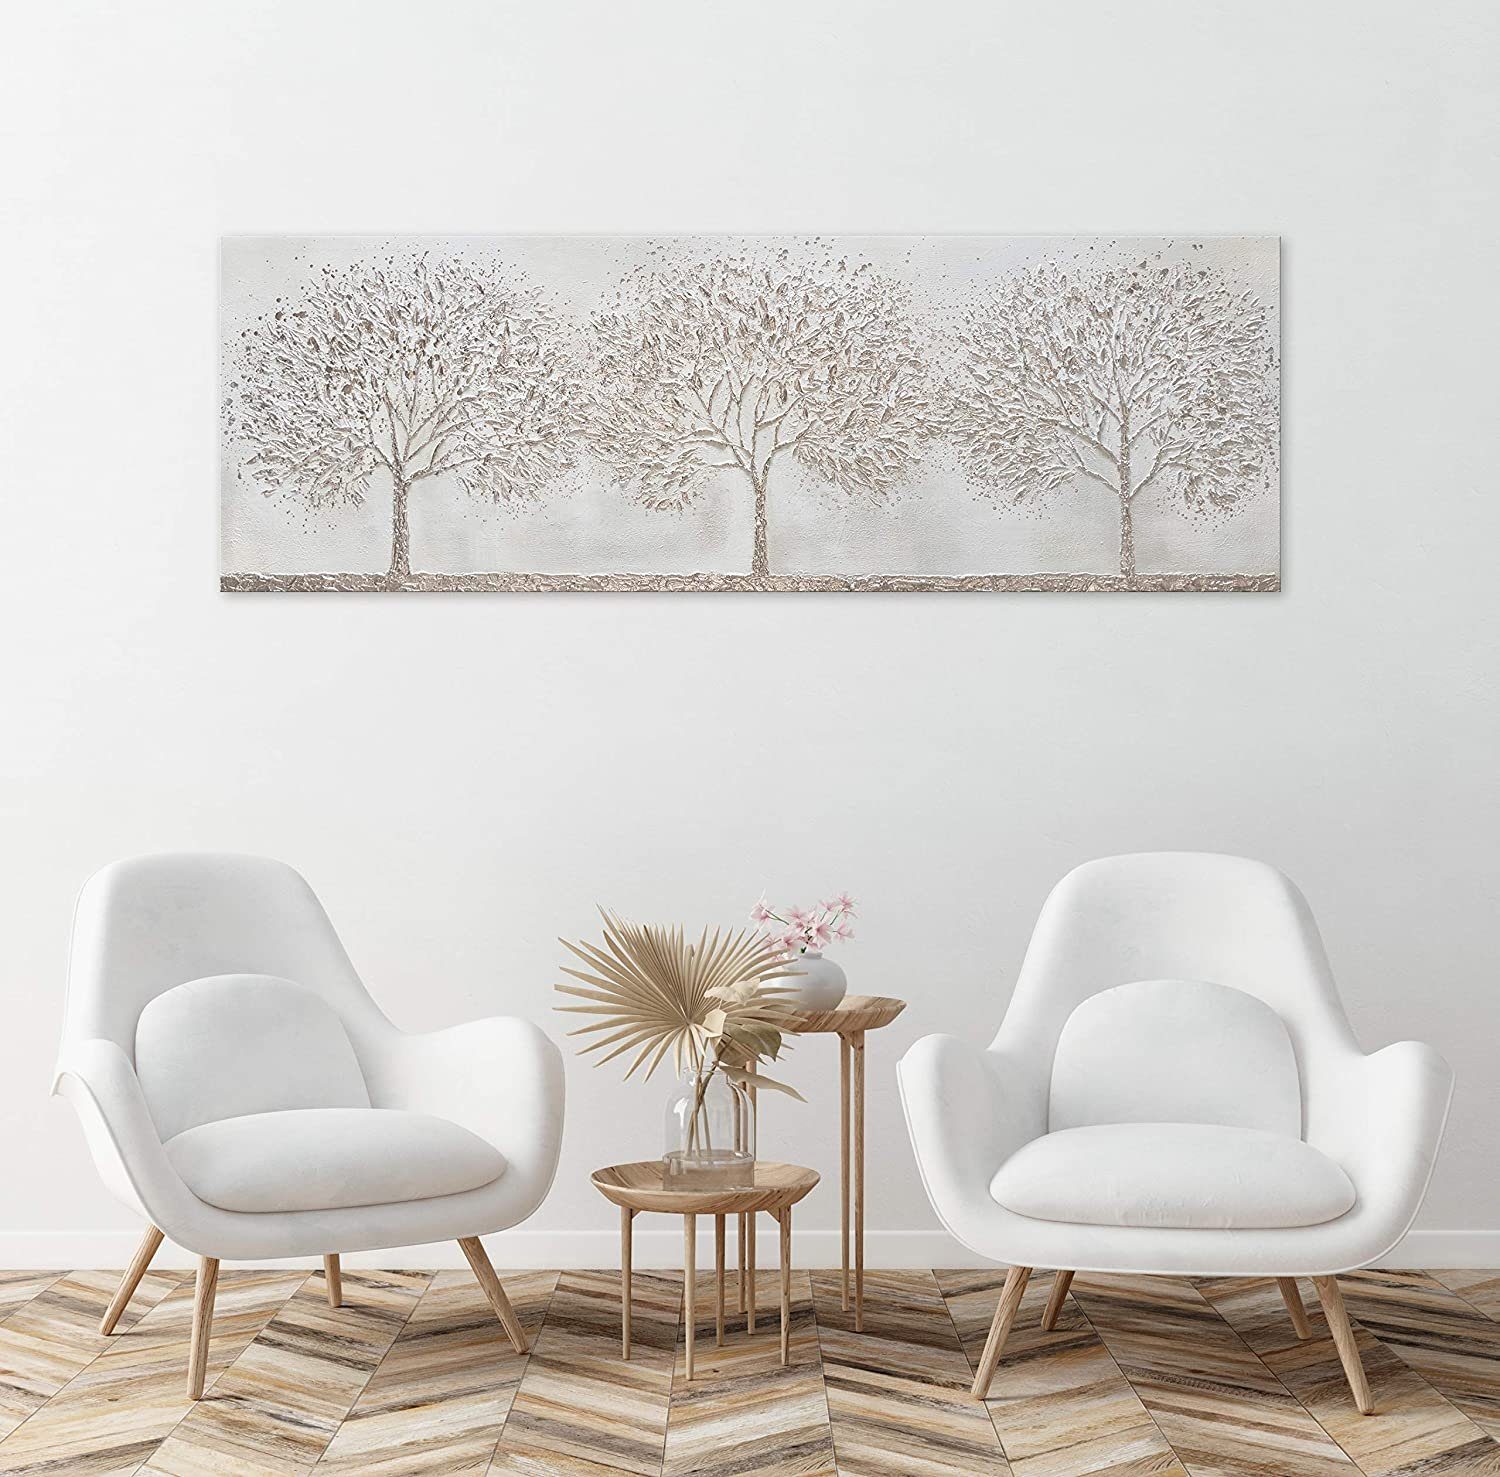 Wald Leinwand Gemälde auf Waldkühle, Grau Landschaft Bäume Handgemalt YS-Art Wald, Bild